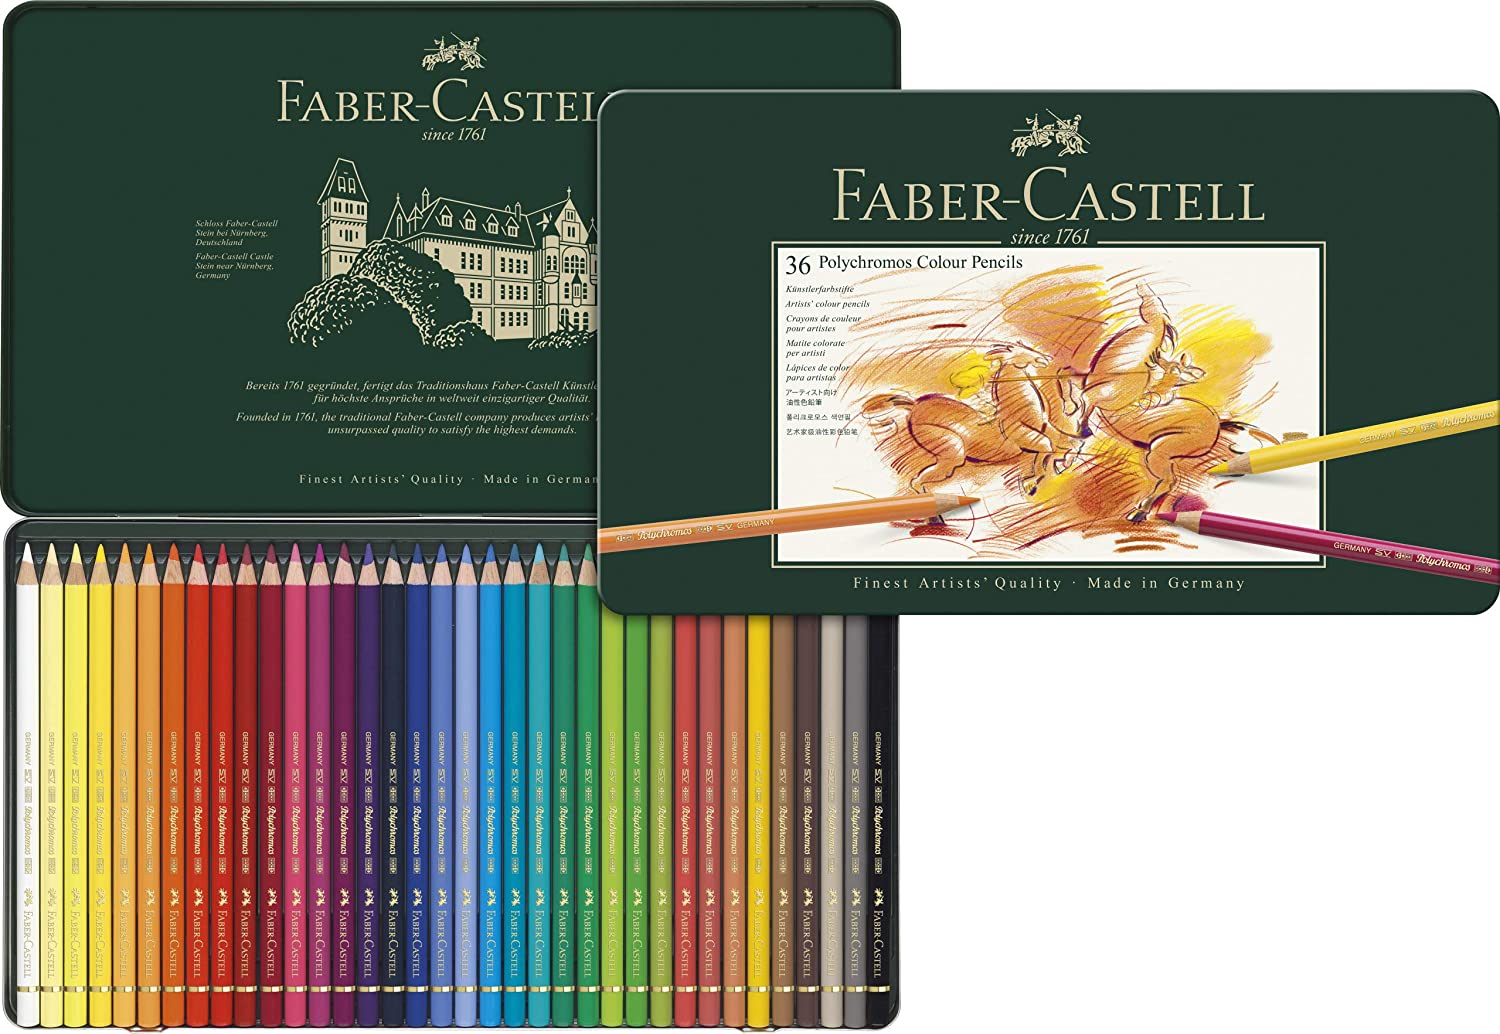 Comprar Lapices de Color Pen Gear, caja -12 uds